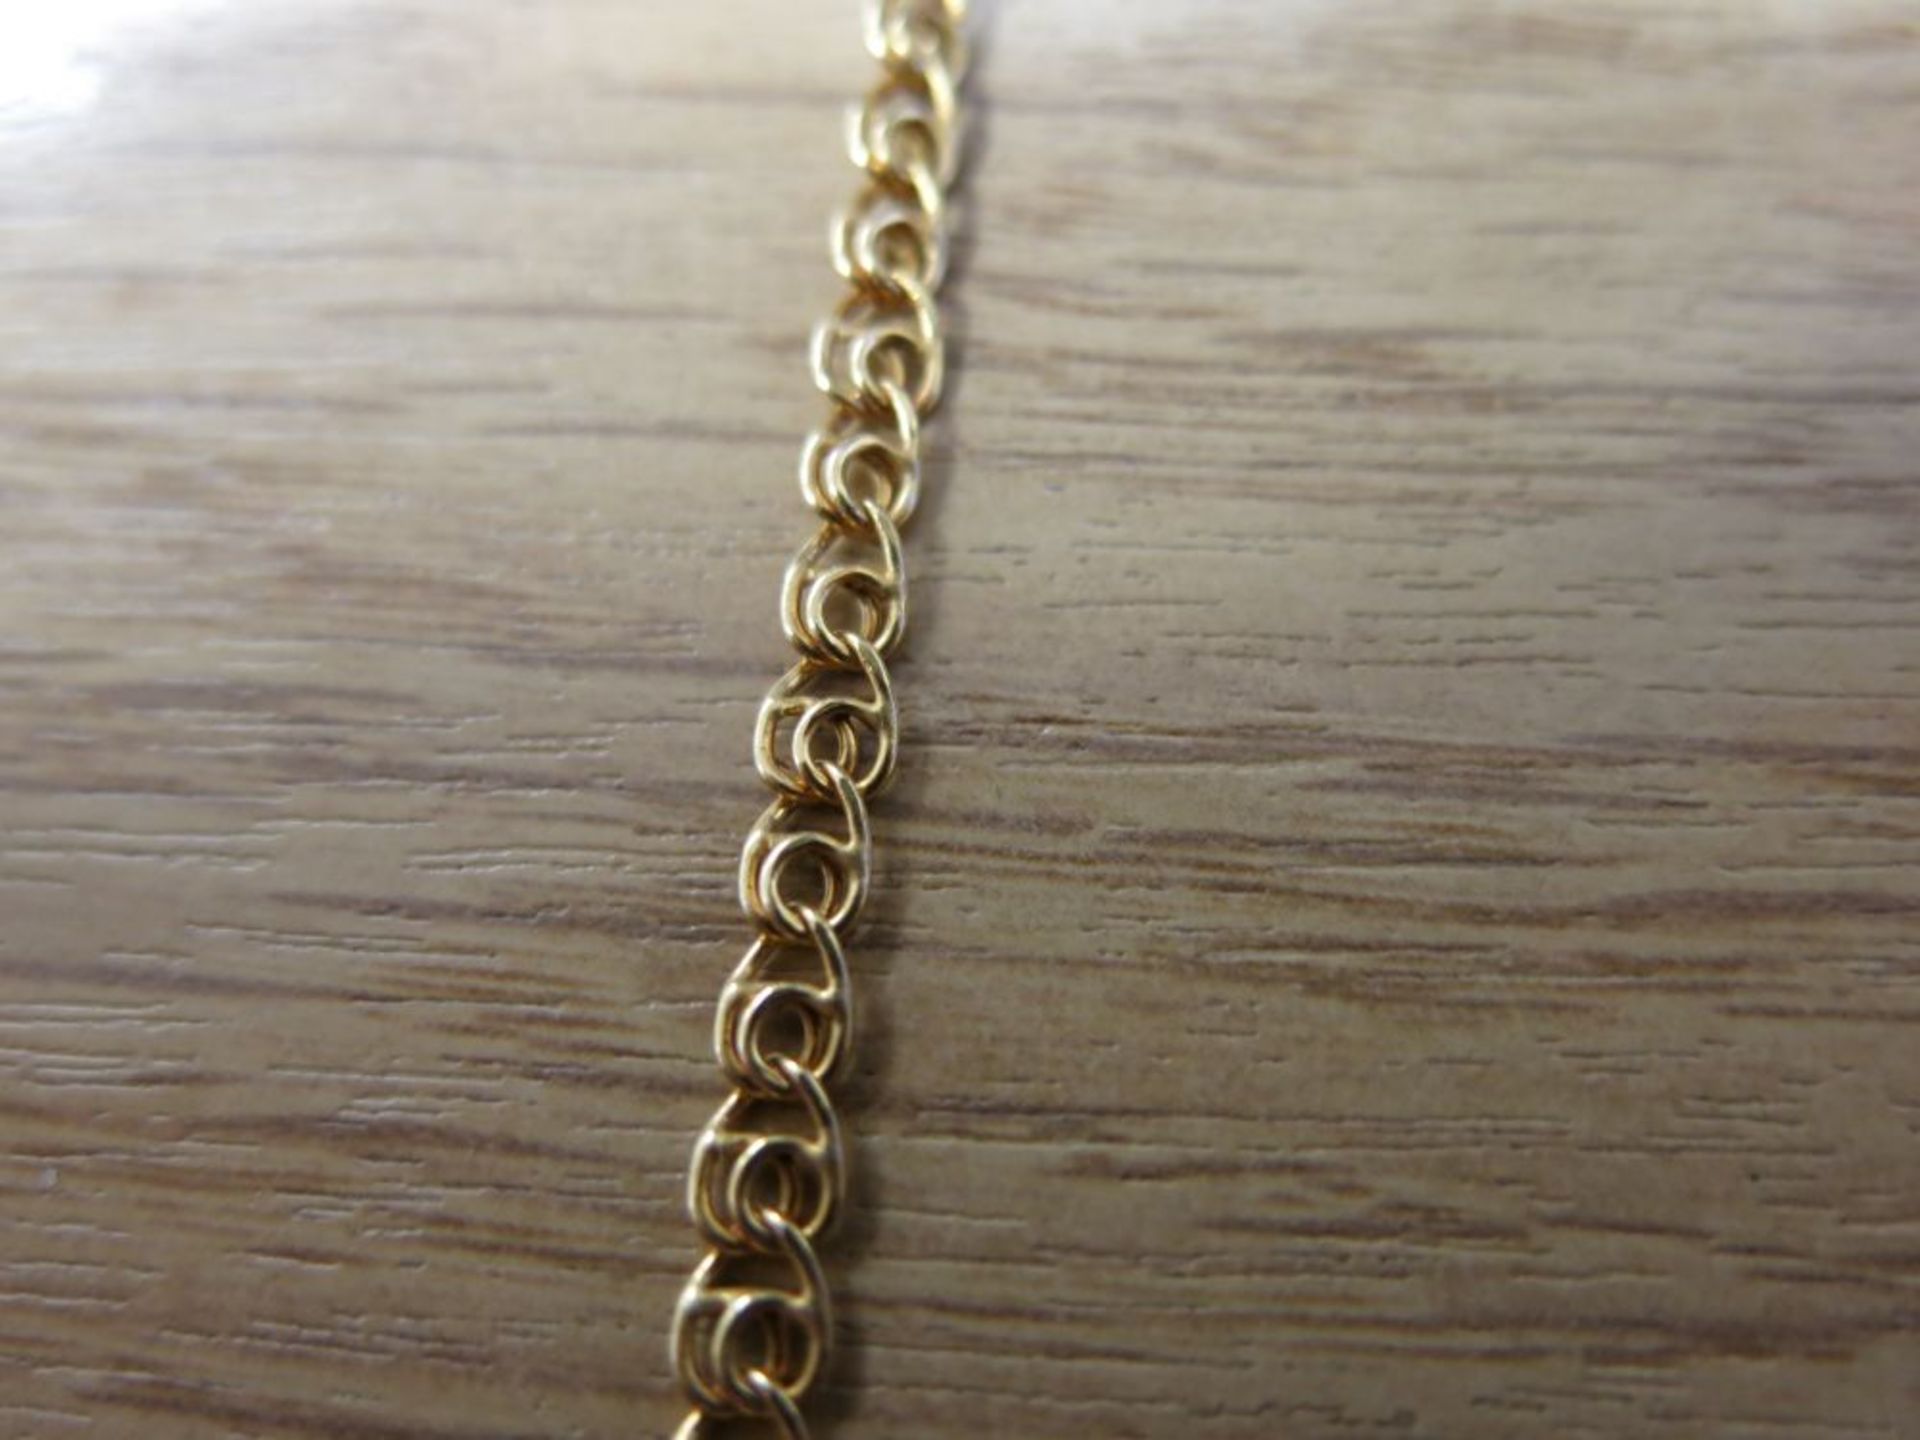 A 9ct Gold Neck Chain, 46cm, 3.5gms (est. £30-£60) - Image 2 of 2